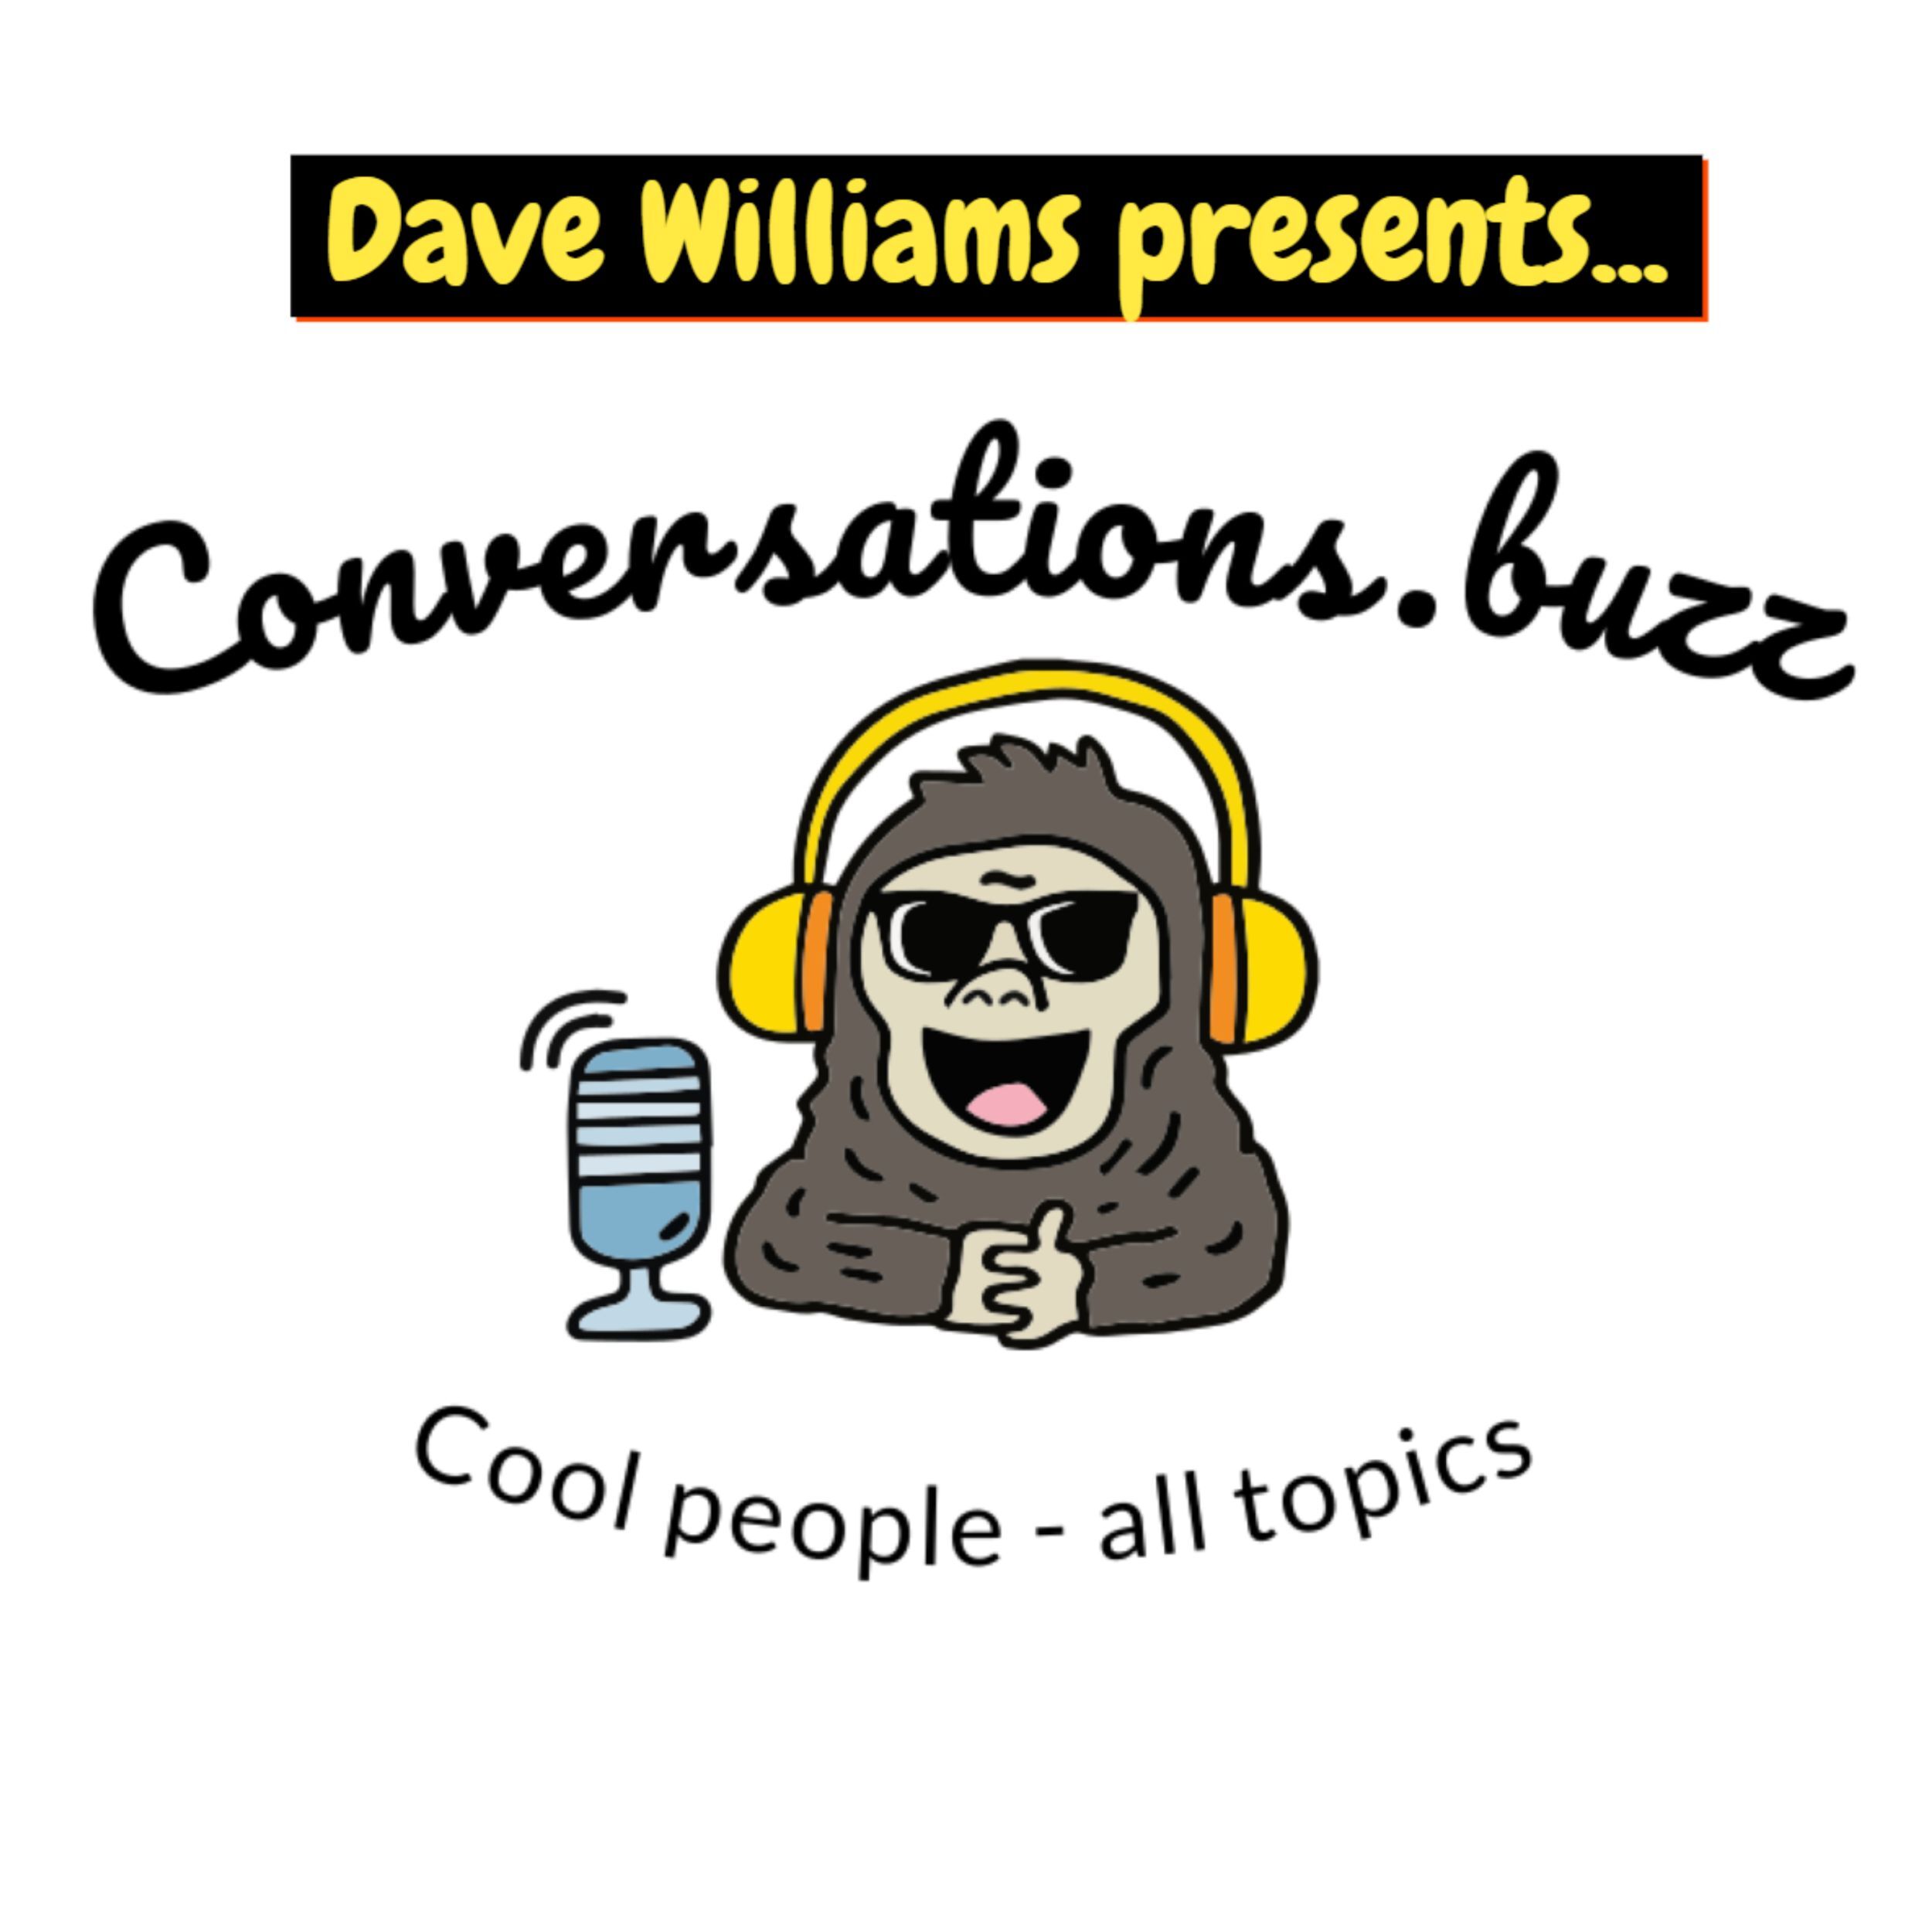 www.conversations.buzz